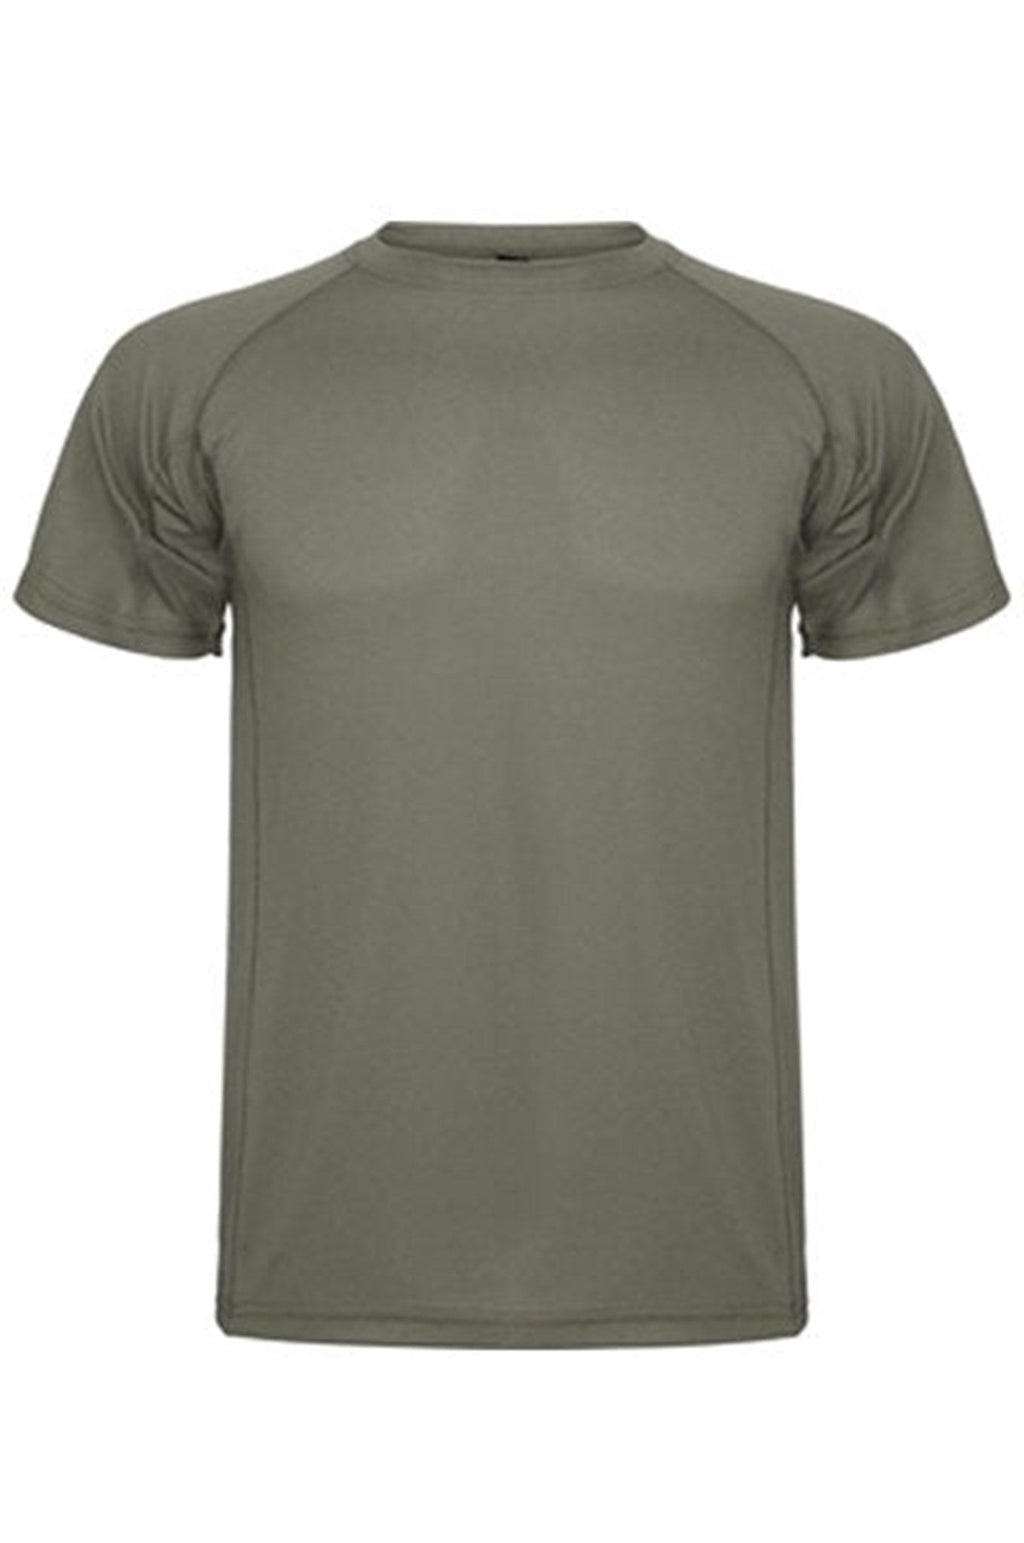 Tréningové tričko - Army Green